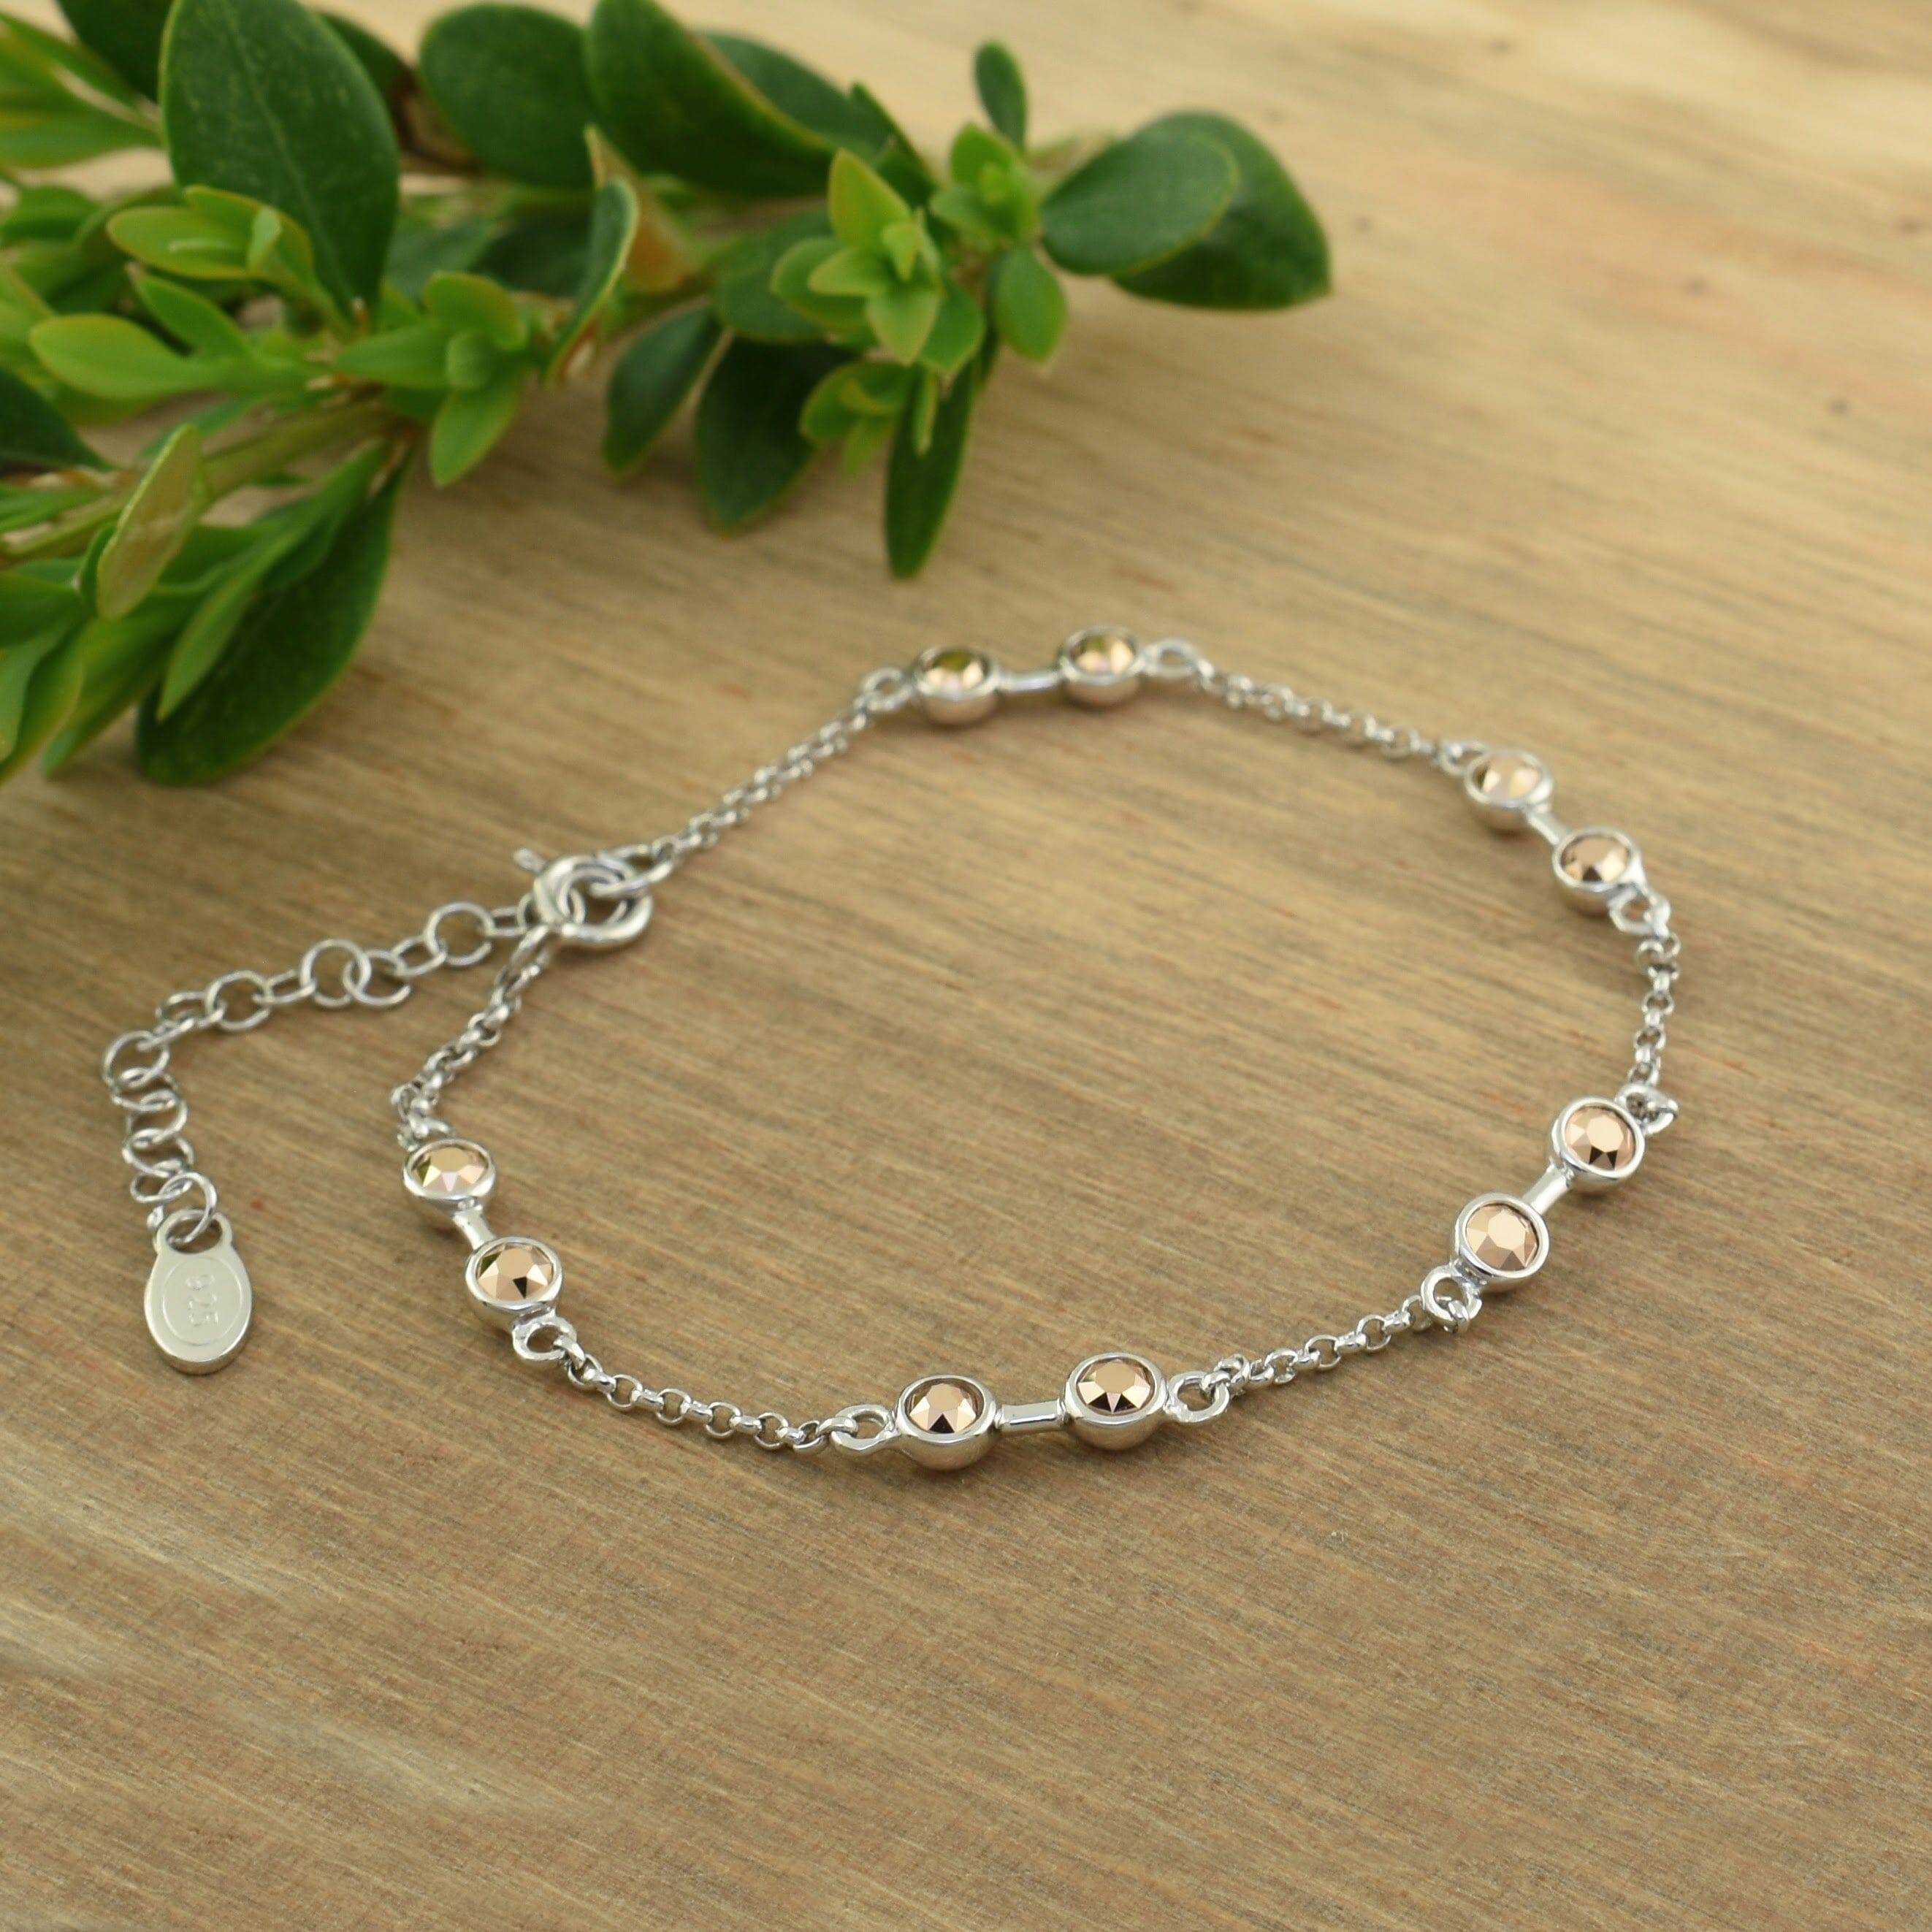 dainty sterling silver bracelet featuring fine Austrian crystal